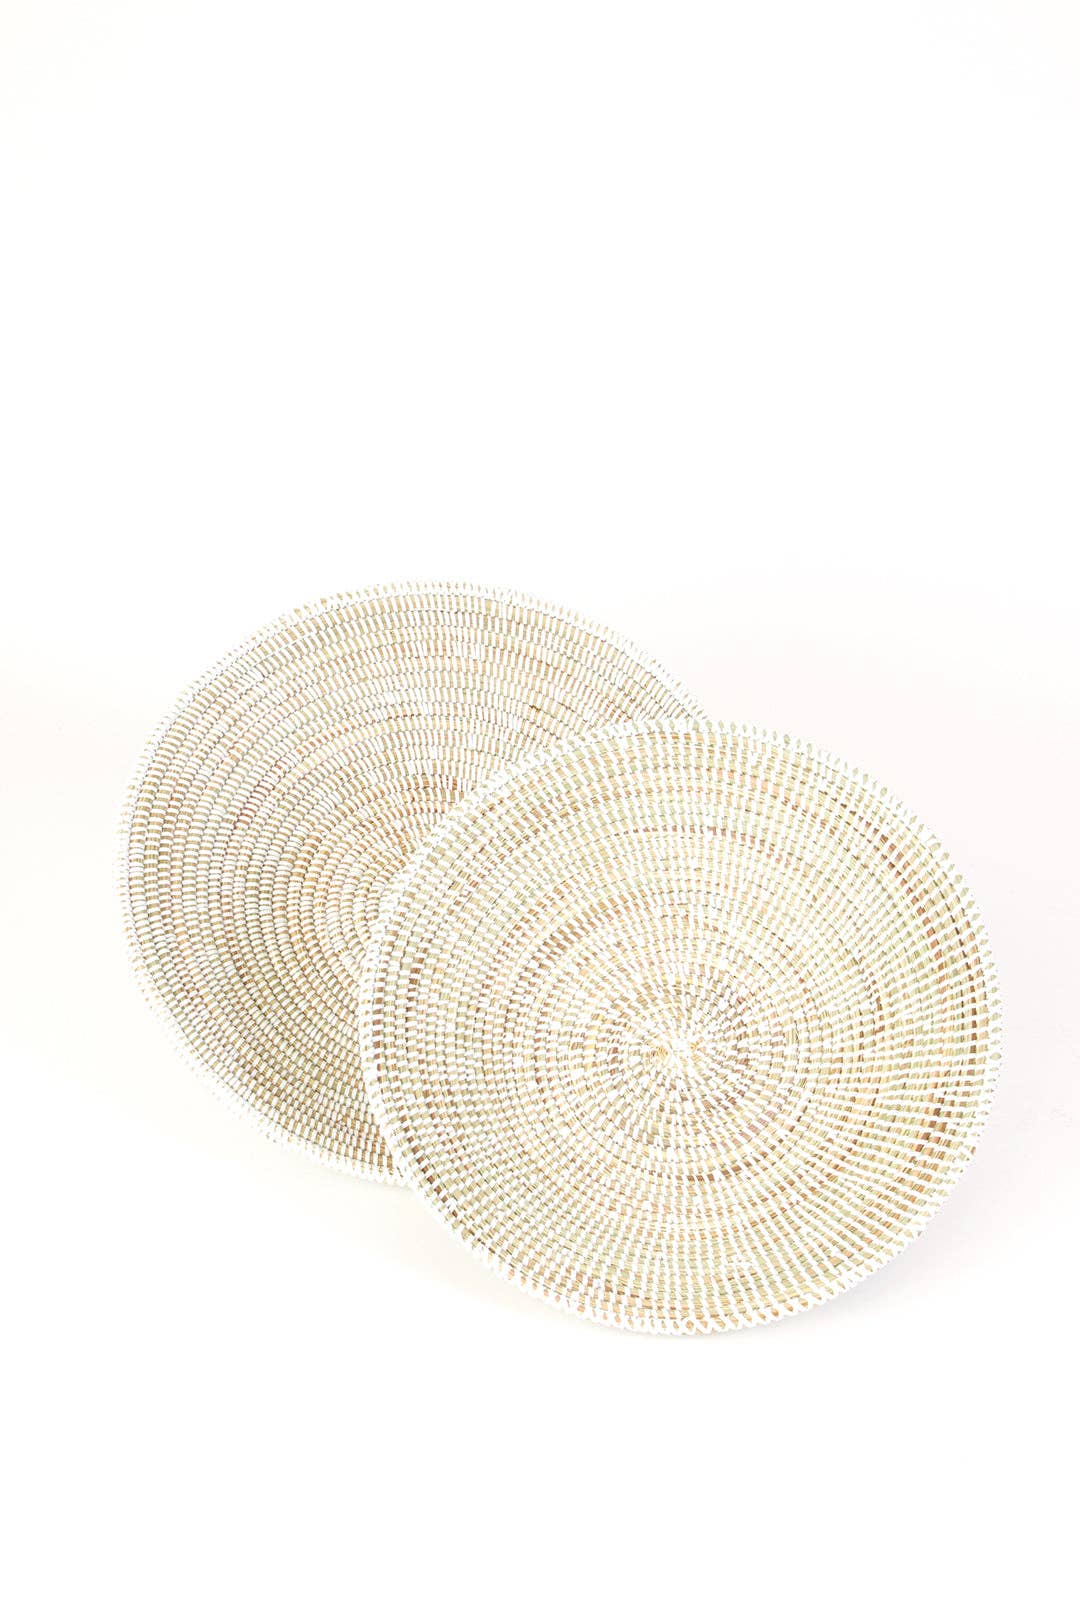 Solid White Grain Basket: Large Basket